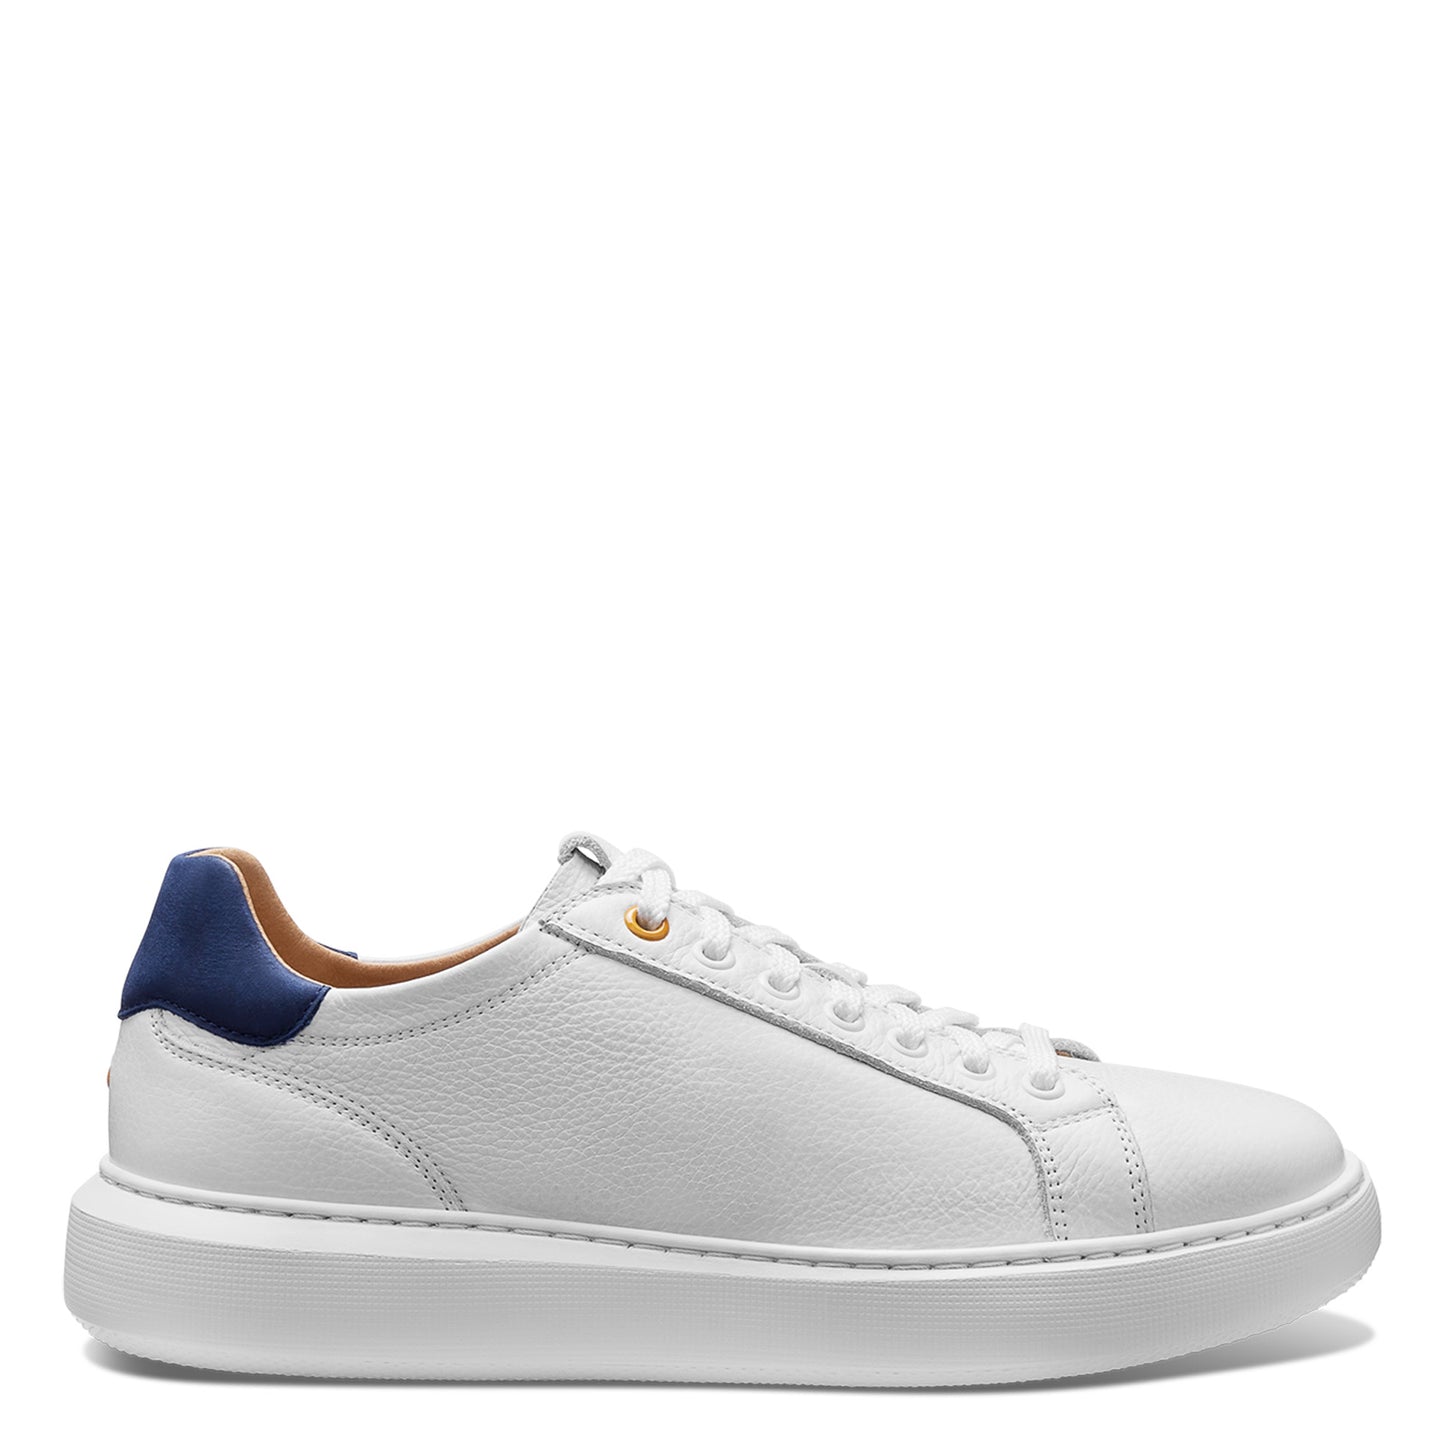 Peltz Shoes  Women's Samuel Hubbard Sunset Sneaker White Leather W1650-110